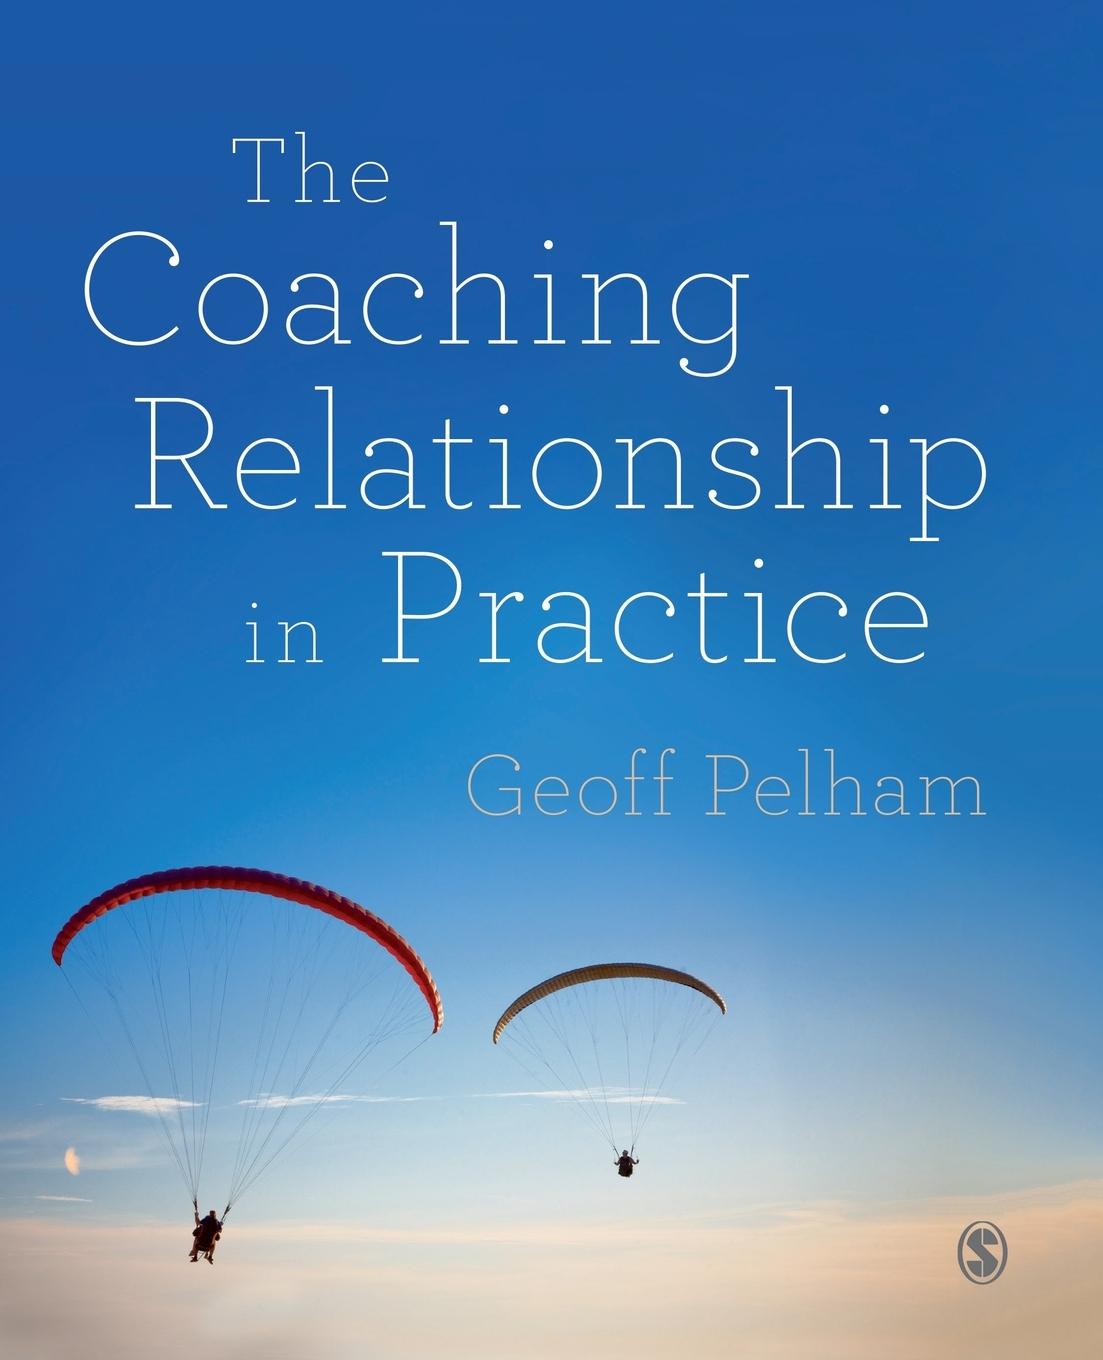 The Coaching Relationship in Practice / Geoff Pelham / Taschenbuch / Paperback / Kartoniert / Broschiert / Englisch / 2015 / SAGE Publications Ltd / EAN 9781446275122 - Pelham, Geoff